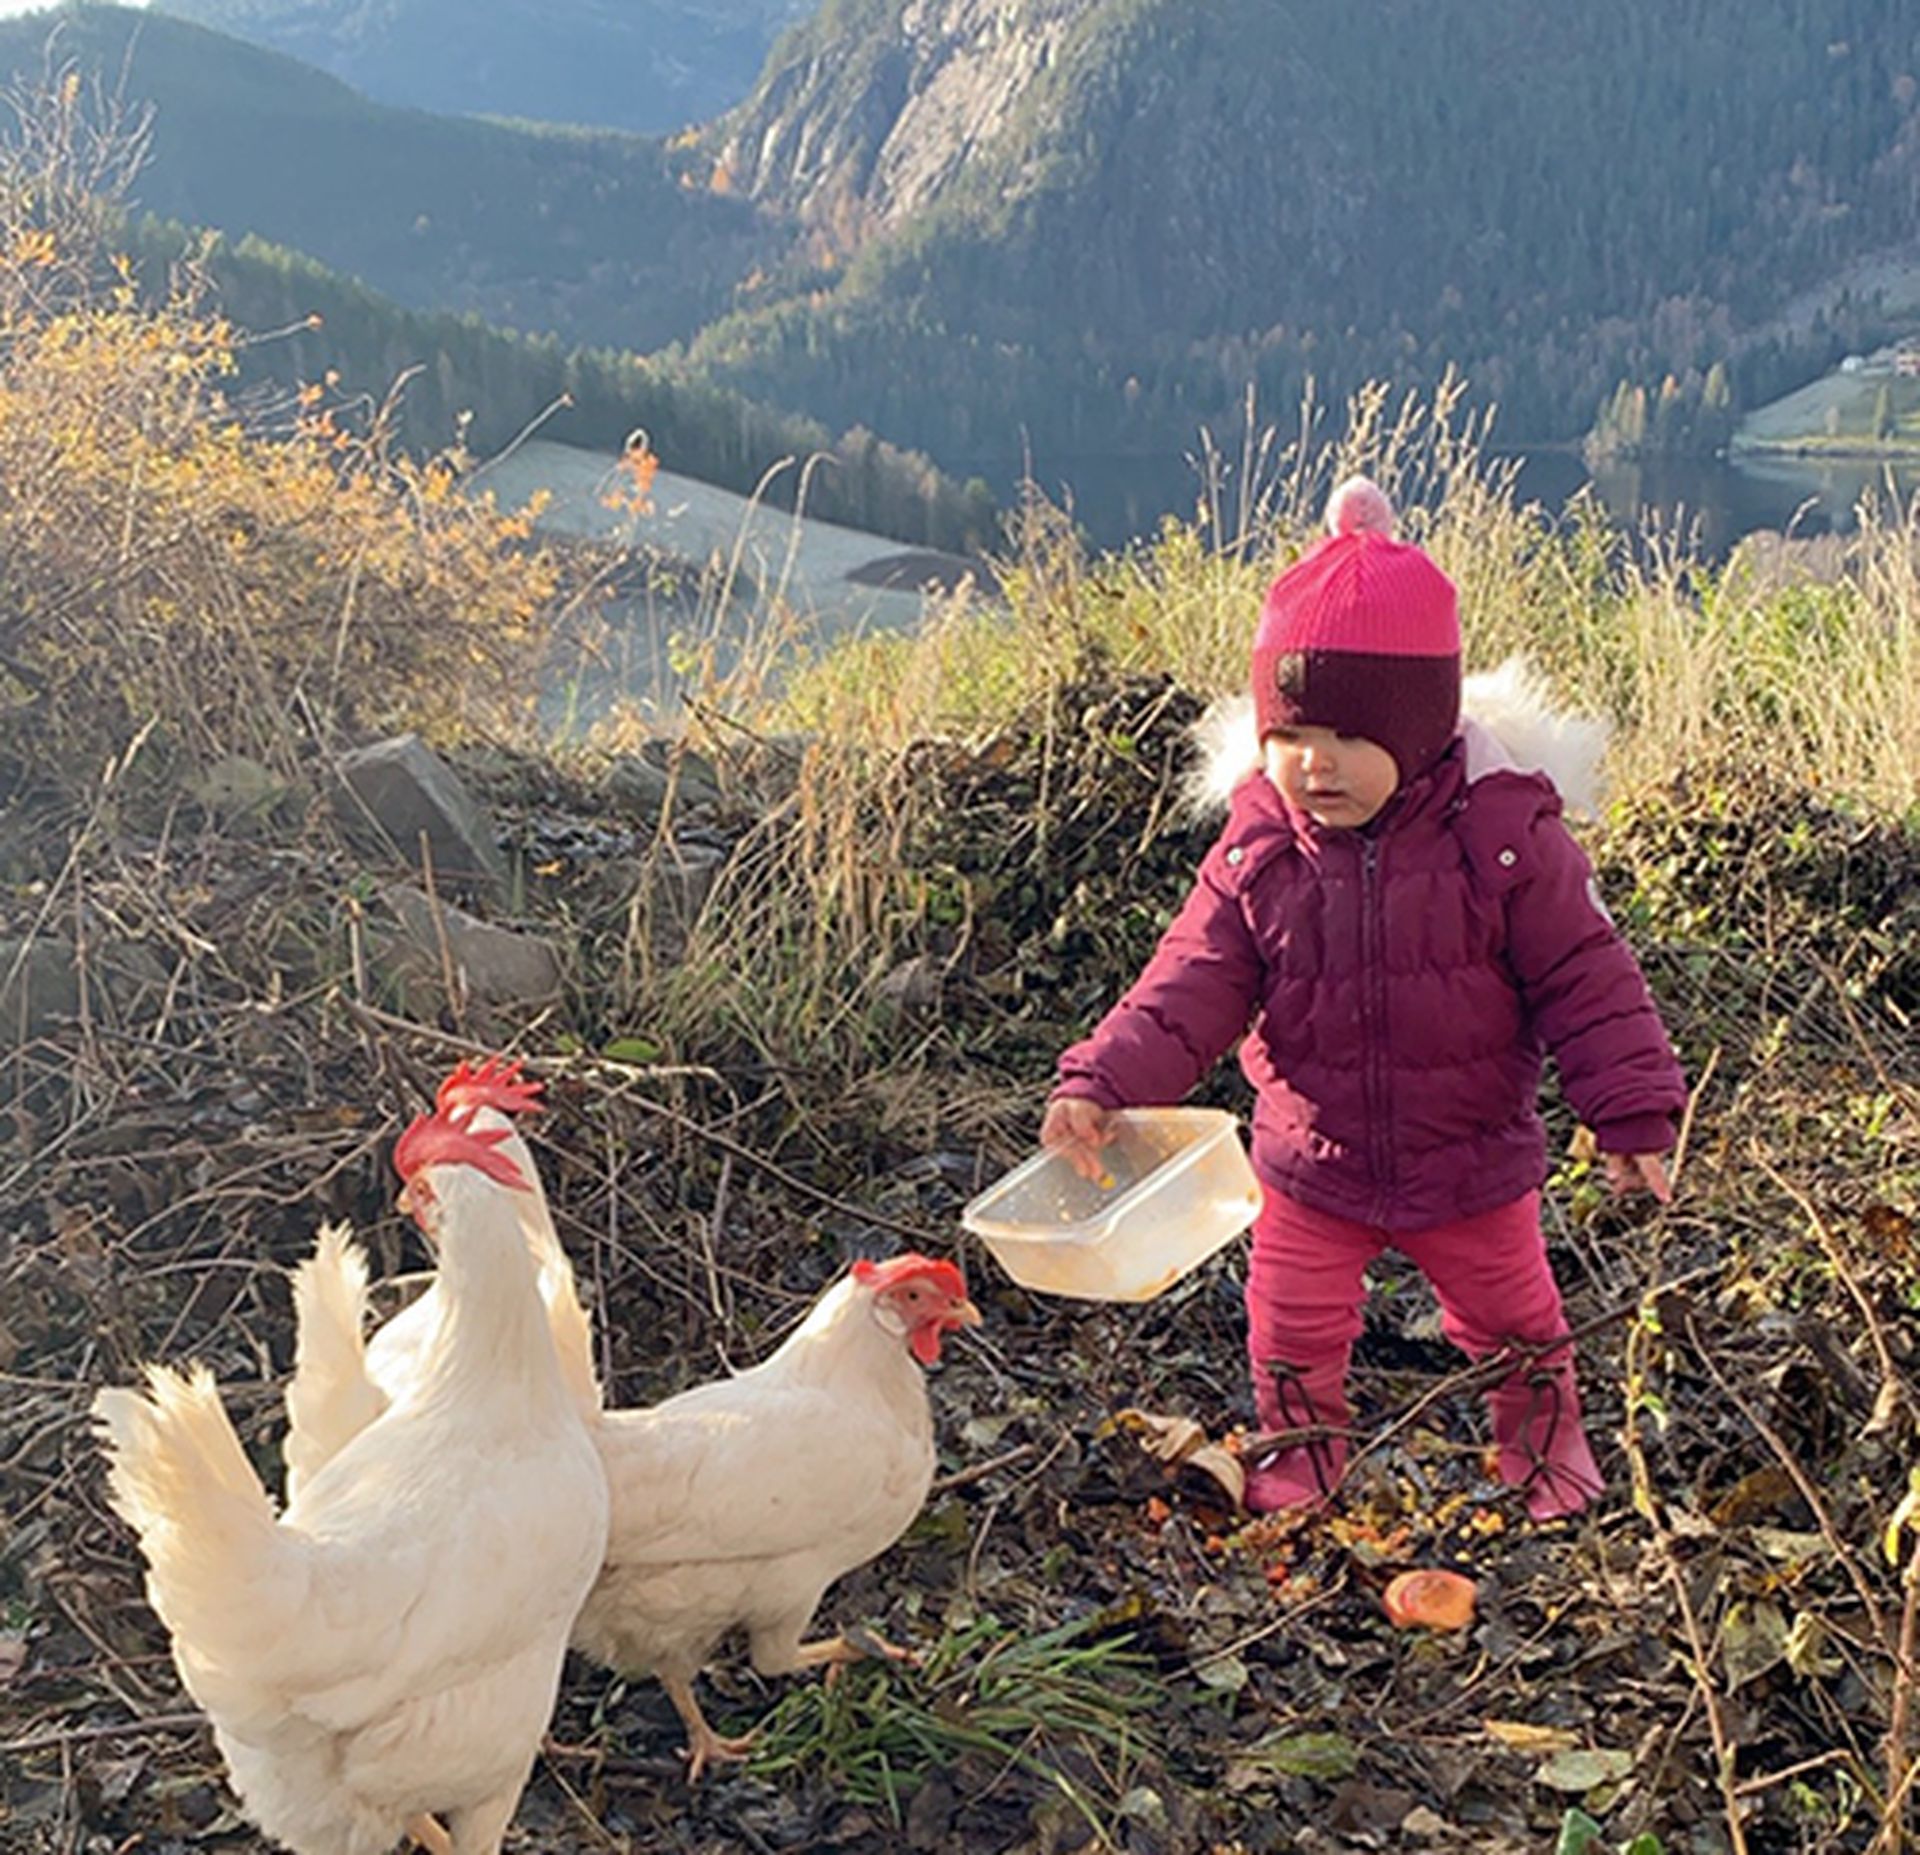 Barn i naturen med vinterklær holder i en plastboks, mater to høner. Bilde.